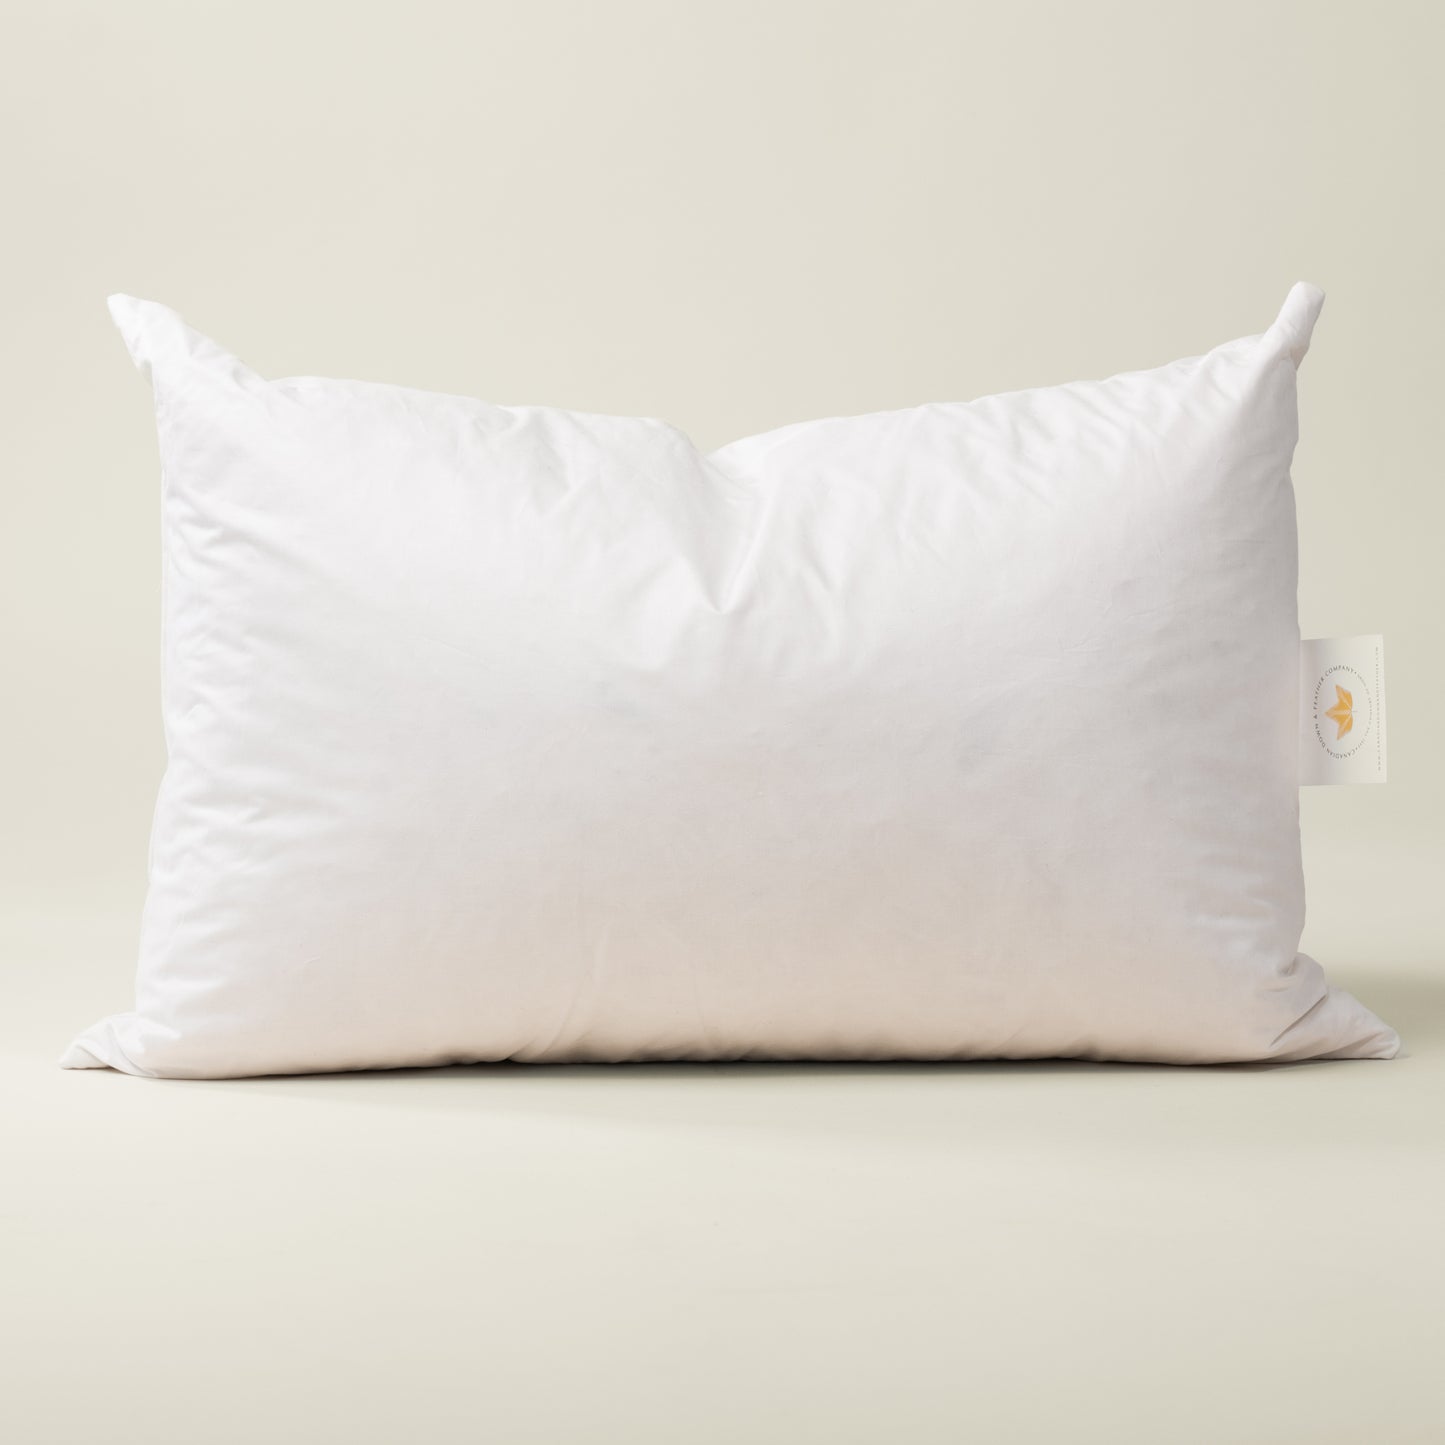 Pillow Fills